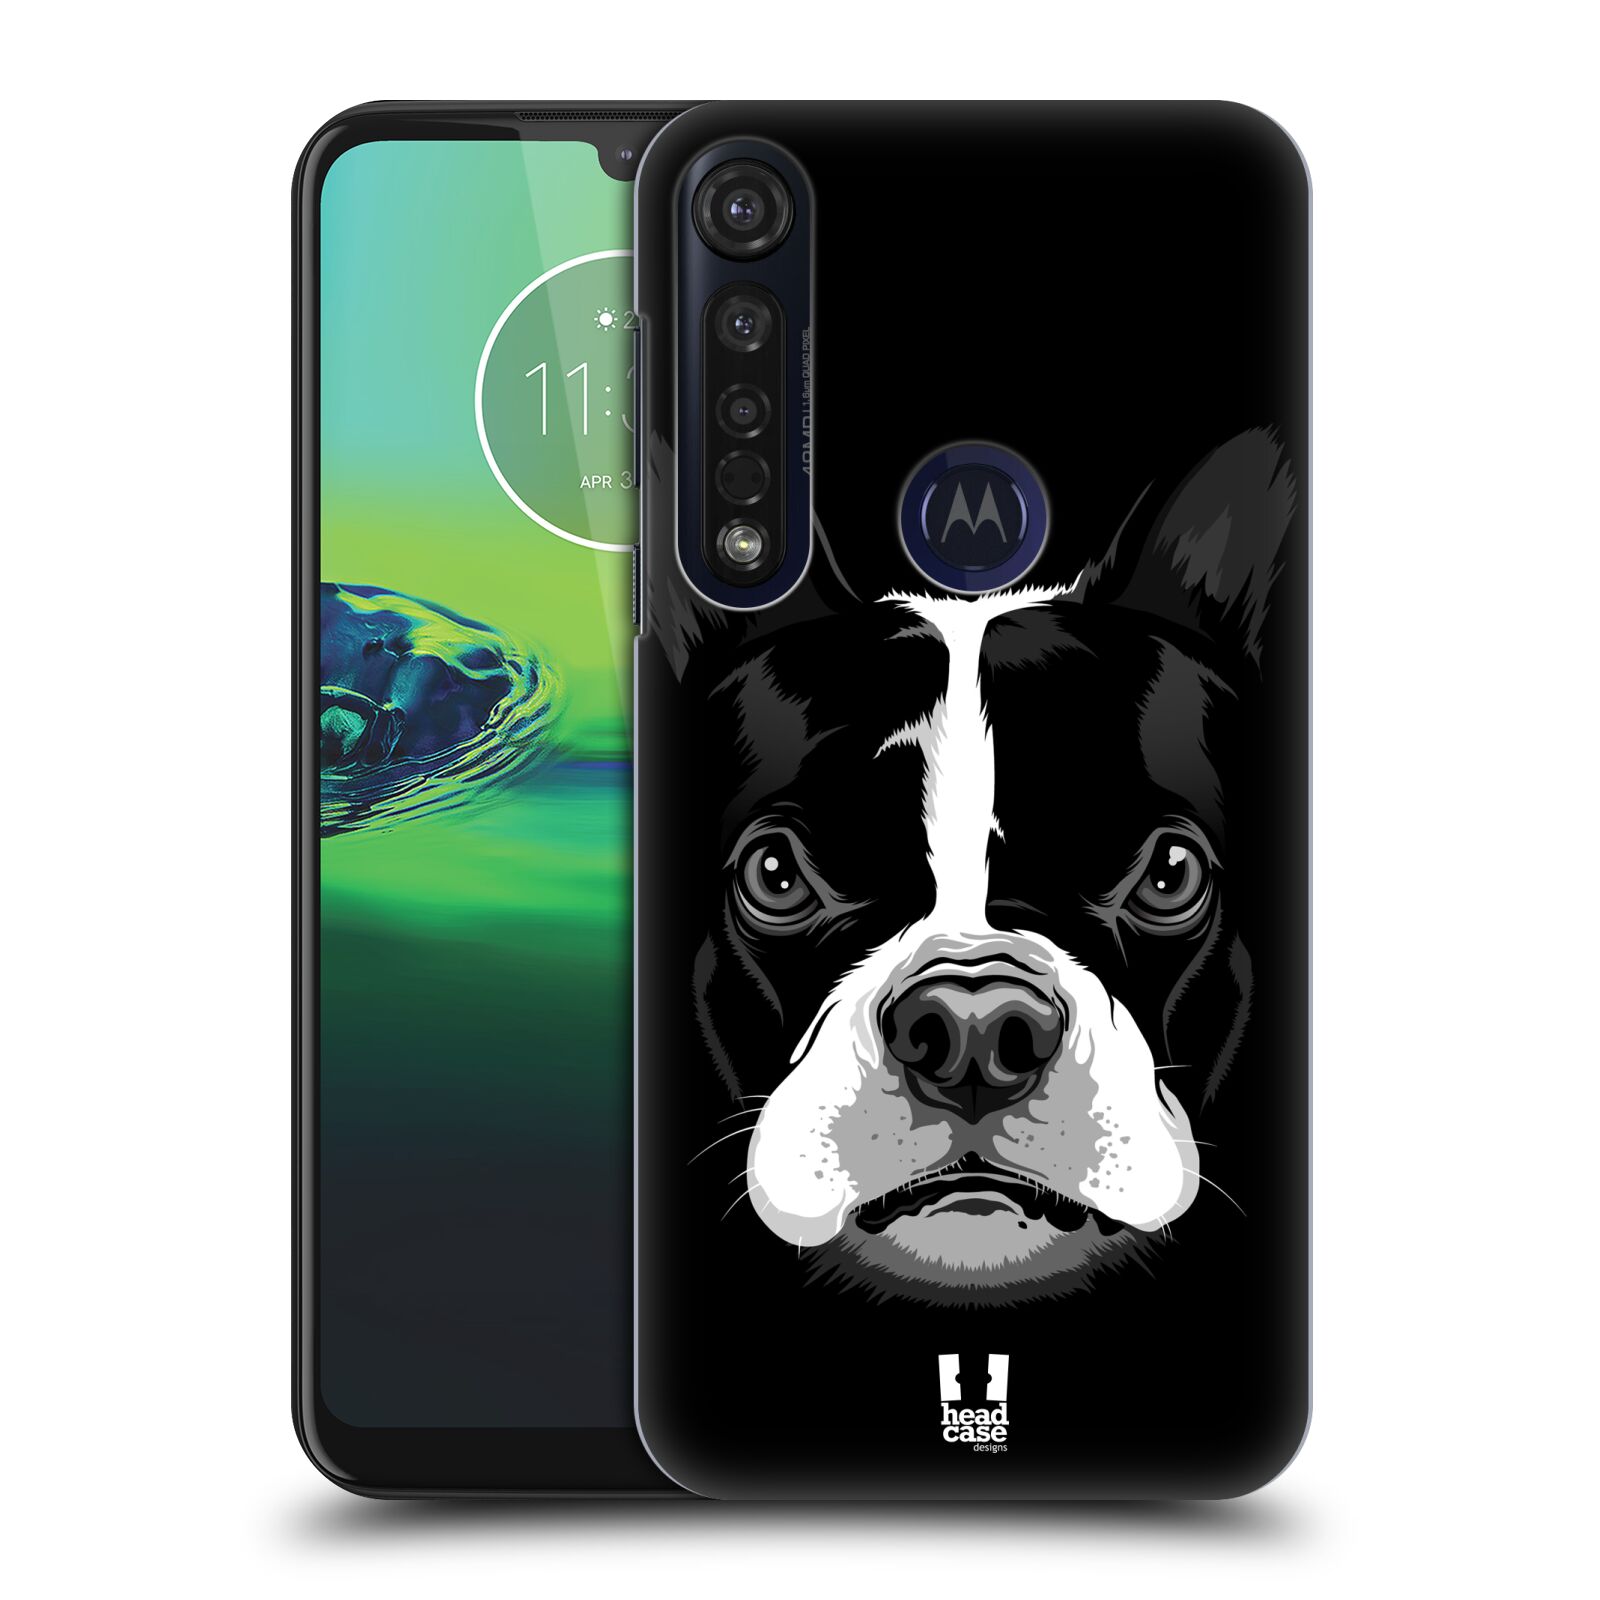 Pouzdro na mobil Motorola Moto G8 PLUS - HEAD CASE - vzor Zvíře kreslená tvář 2 buldok